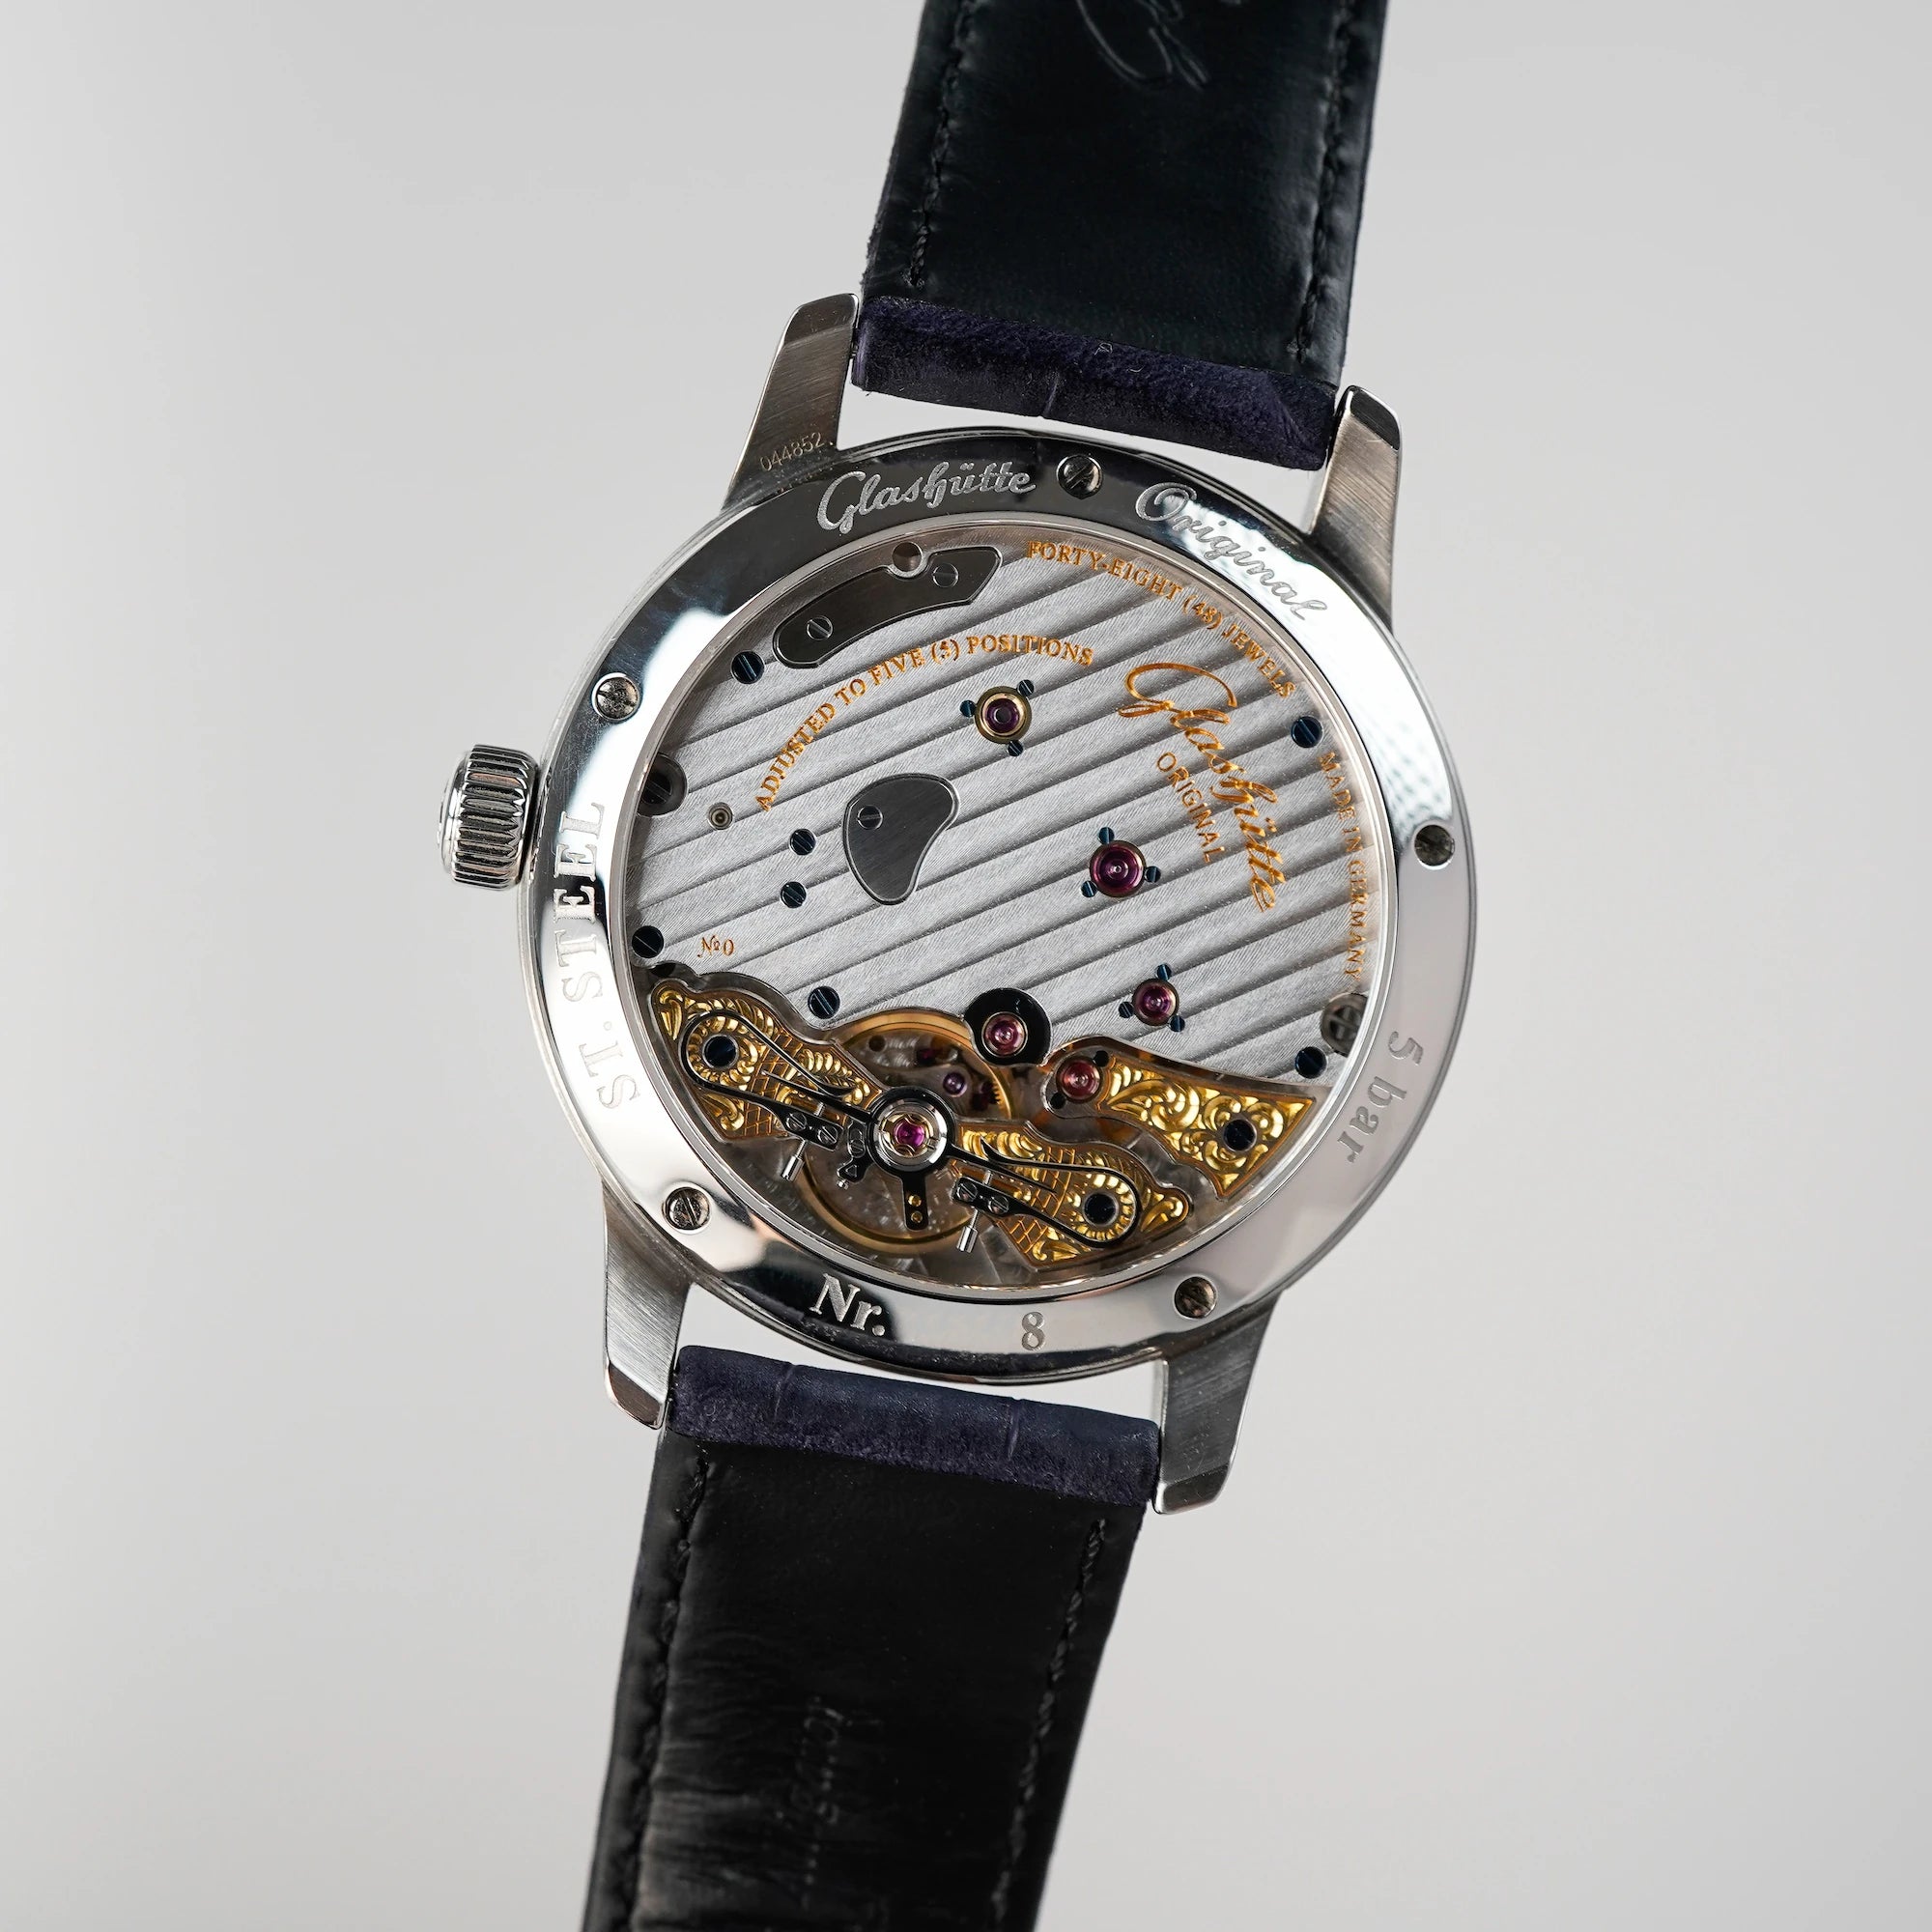 Gehäuseboden der Glashuette Original Panoreserve Uhr mit gläsrnem CaseBack und Blick auf das verzierte mechanische Uhrwerk